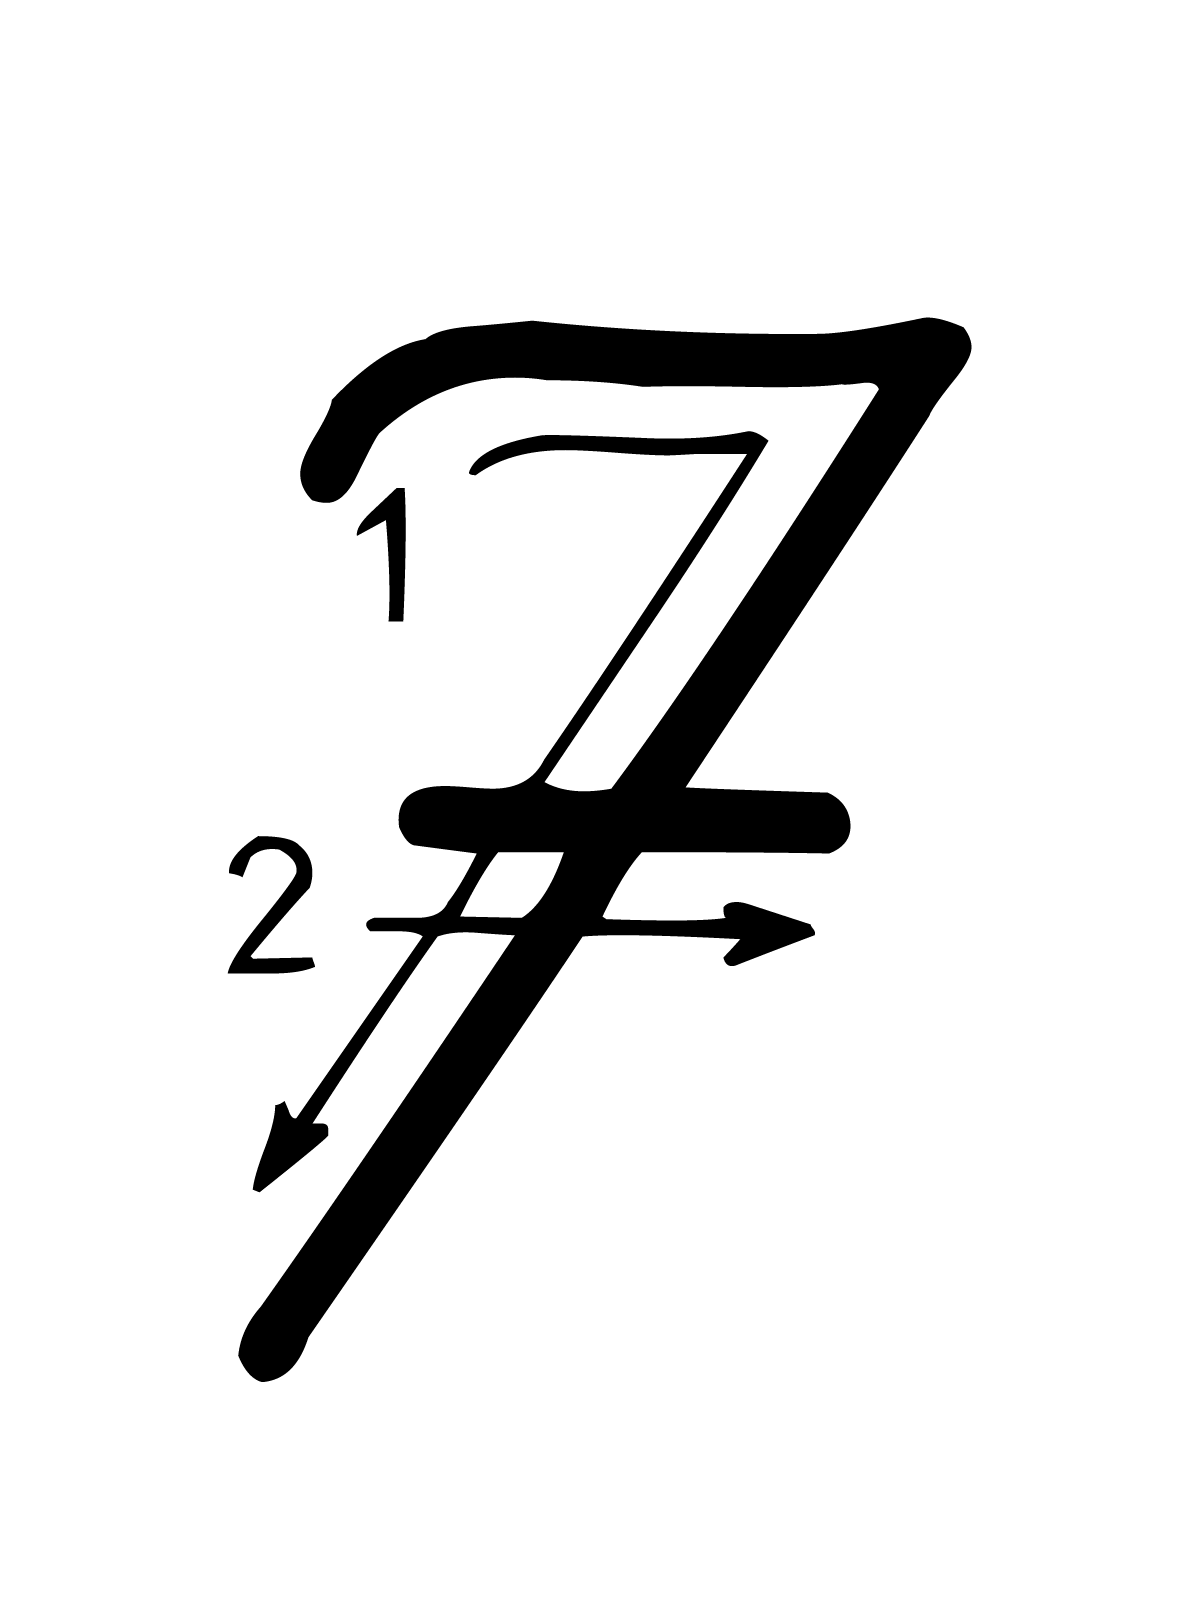 Lettere e numeri - Numero 7 (sette) con indicazioni movimento corsivo